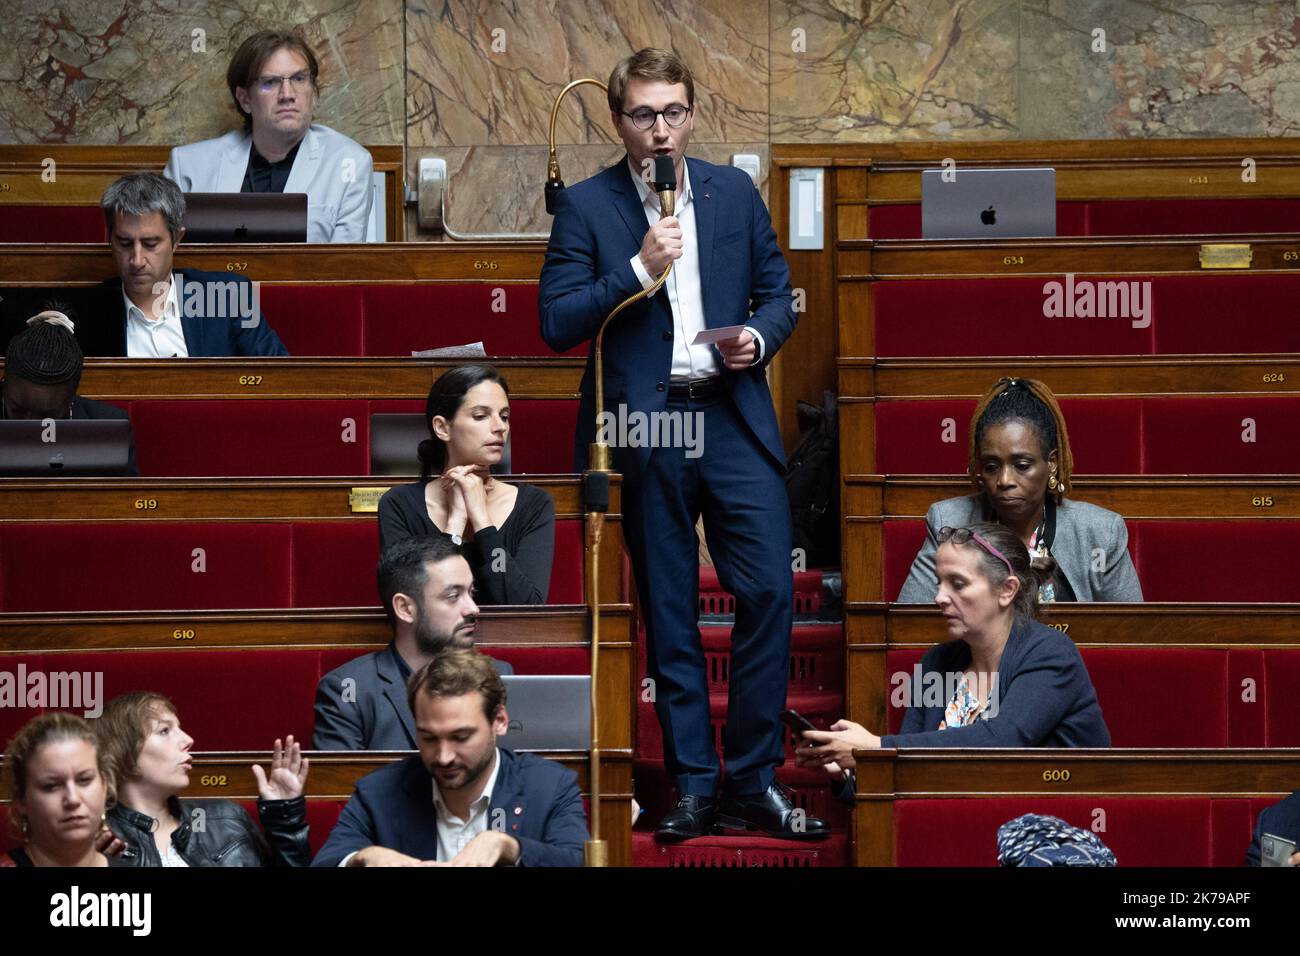 Francois Piquemal, vice di LFI, interviene durante la discussione sul progetto di bilancio 2023 all'Assemblea nazionale francese, a Parigi, il 17 ottobre 2022. Foto di Raphael Lafargue/ABACAPRESS.COM Foto Stock